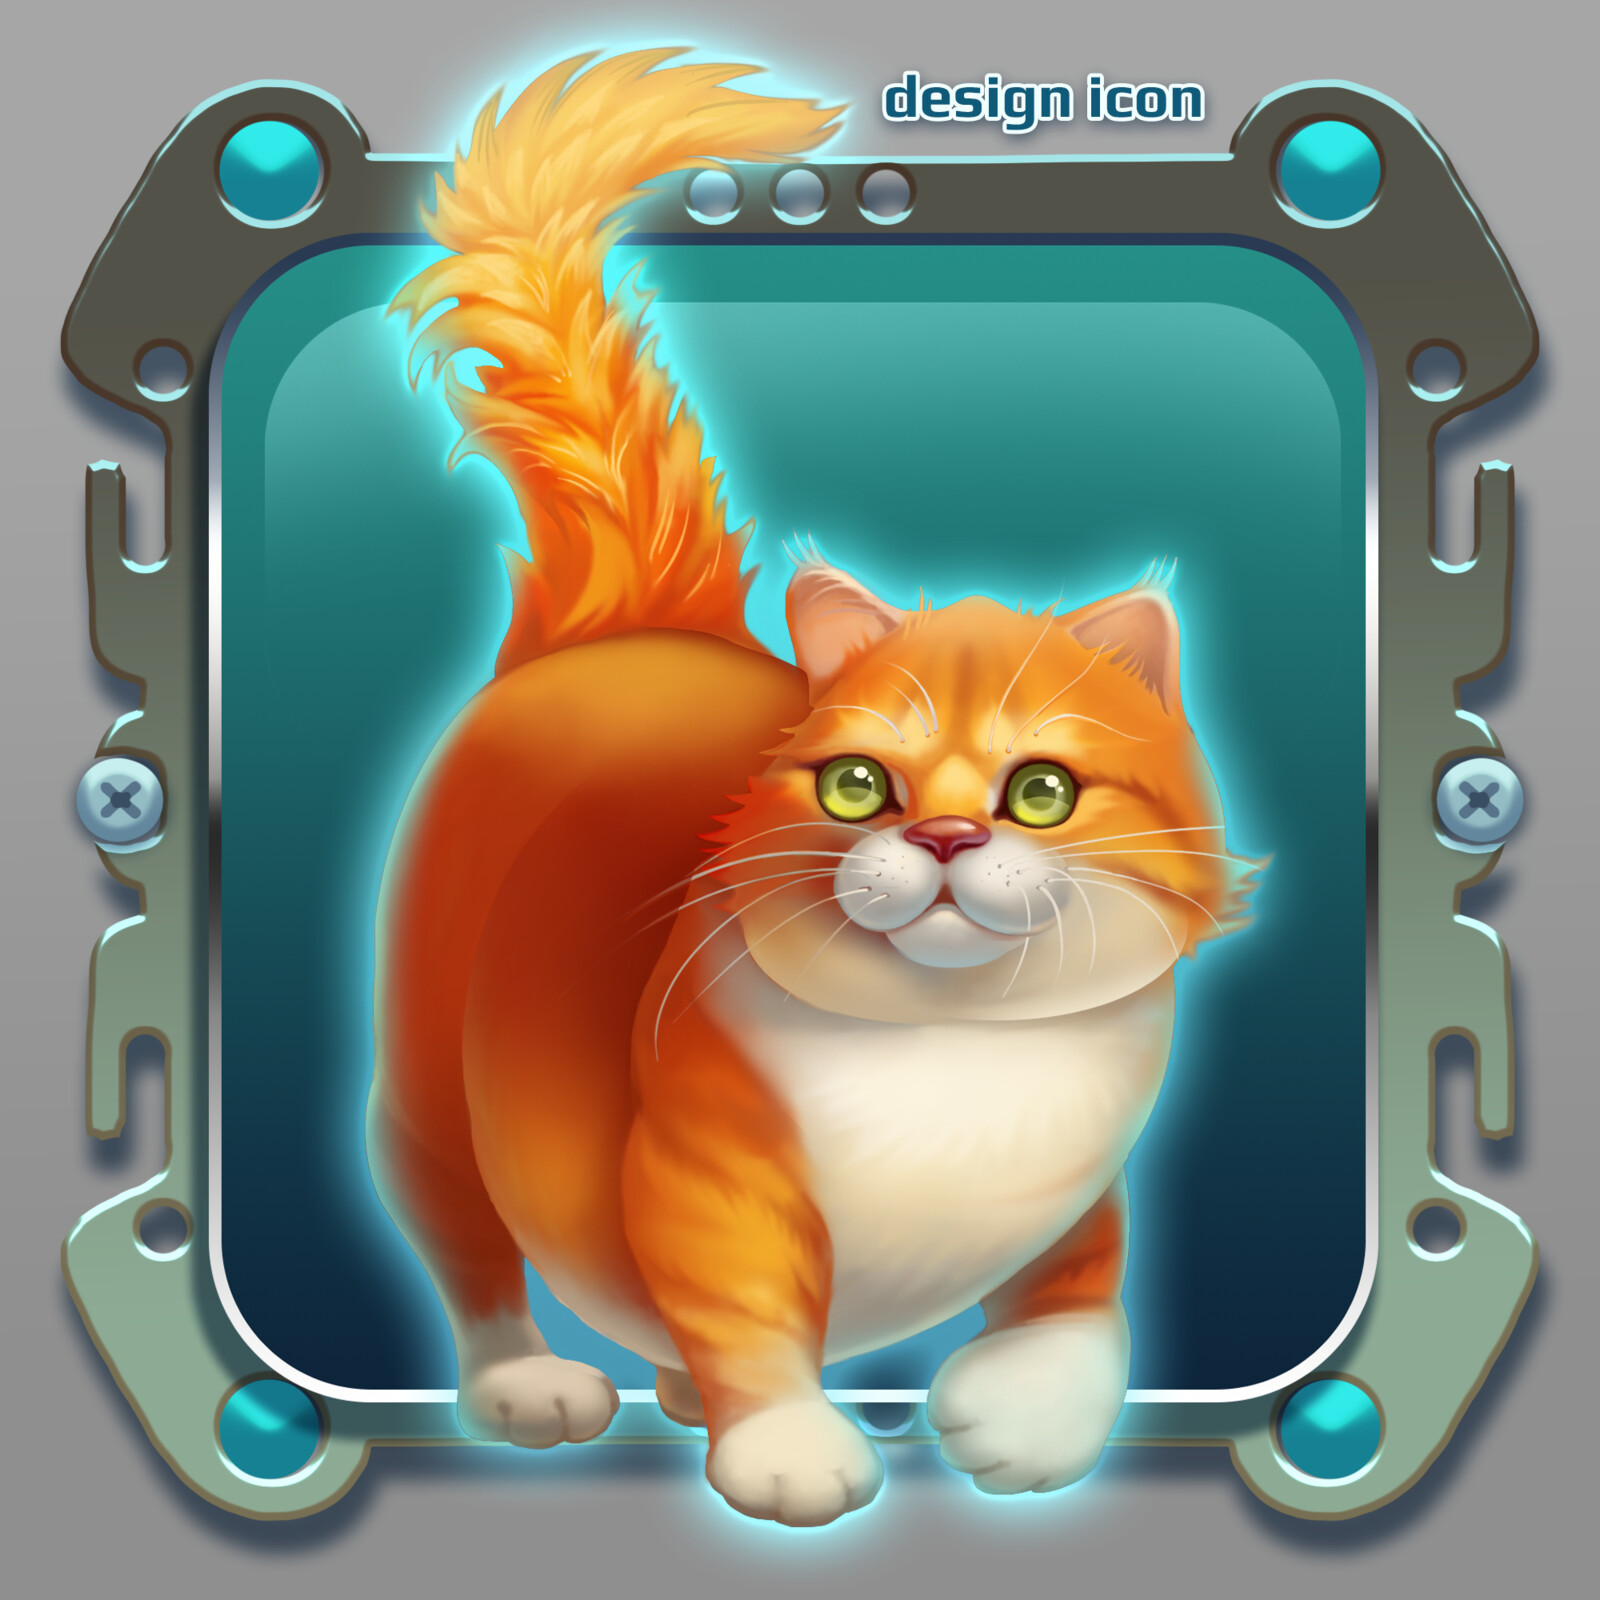 design game icon cat